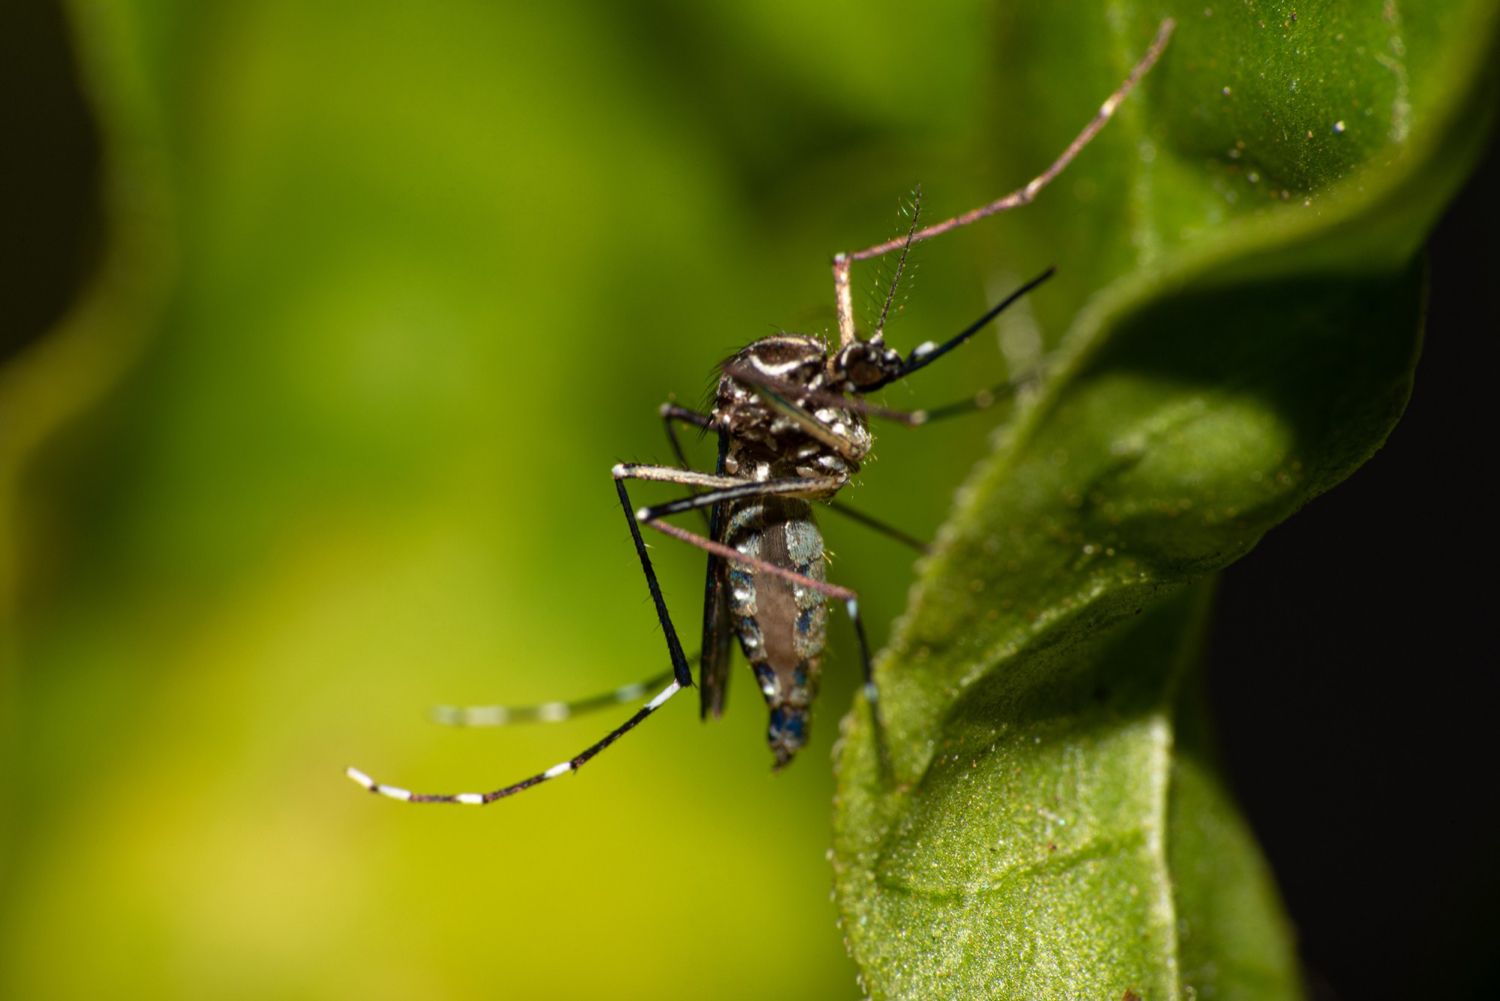 AXON COMUNICACION, Combatir las enfermedades transmitidas por mosquitos mediante tecnologías de control genético